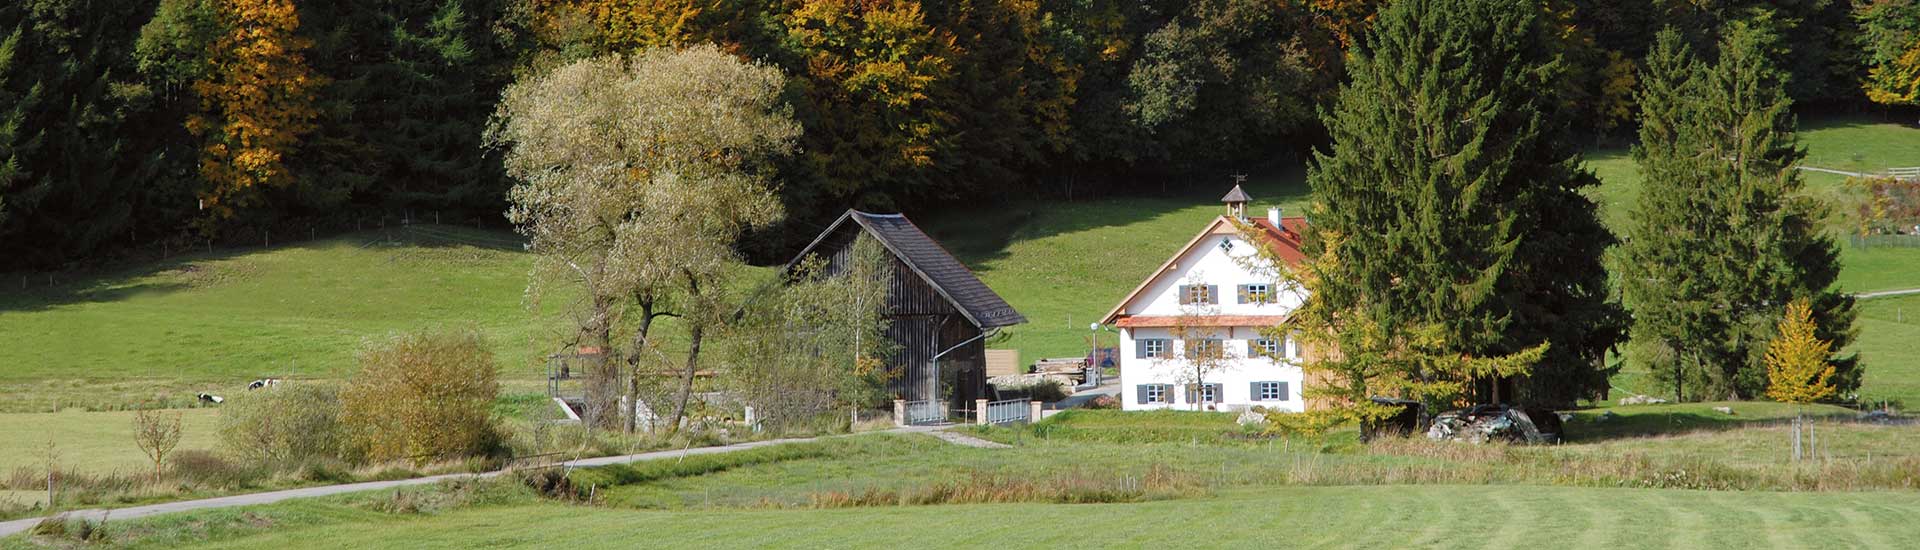 Schloßmühle Liebenthann im Tal der östlichen Günz